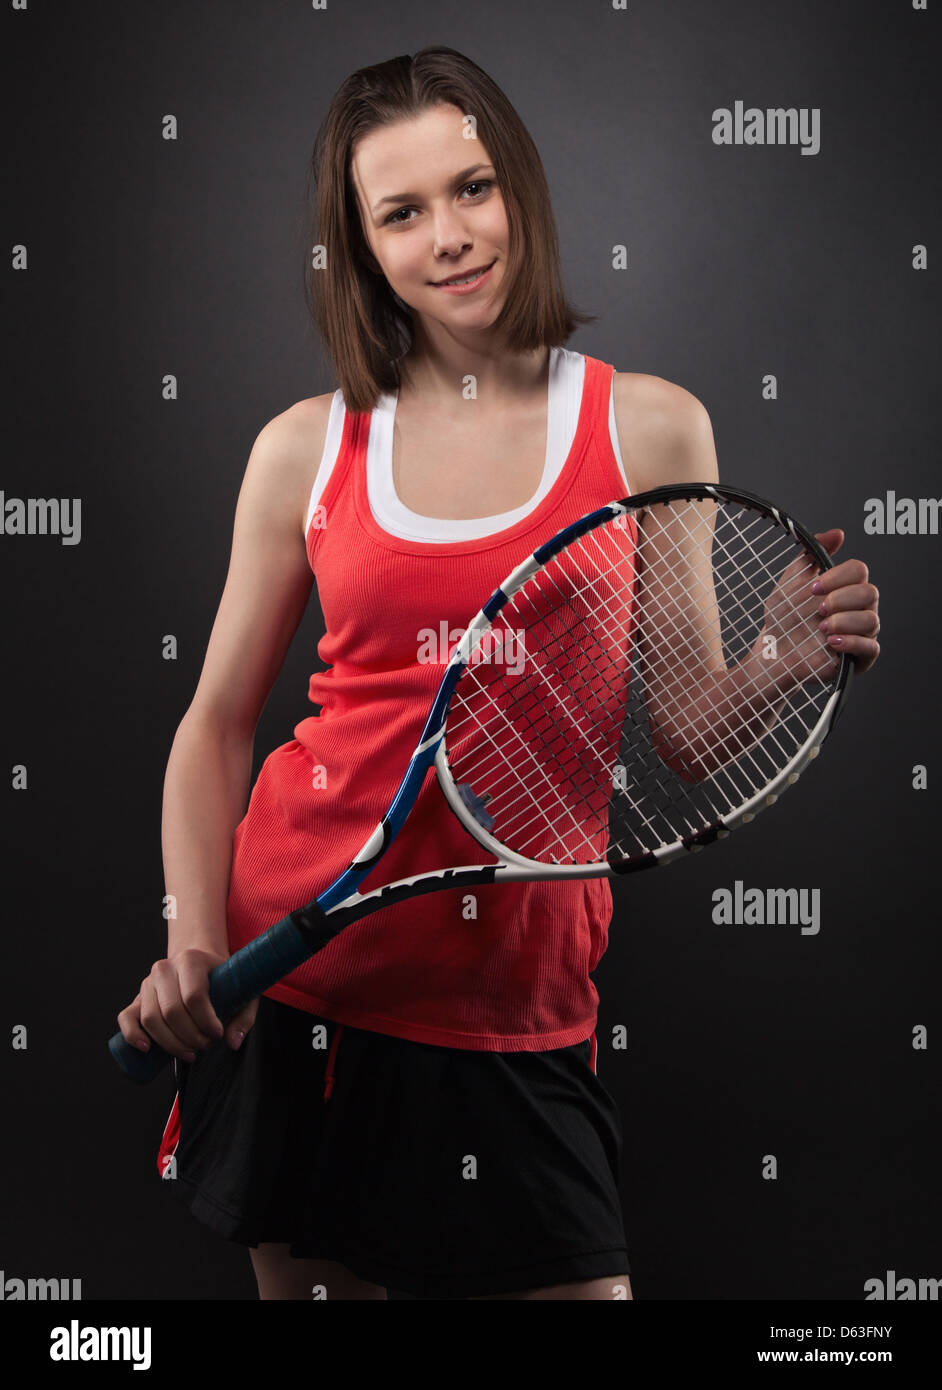 Porträt des sportlichen Teengirl Tennisspieler Stockfoto